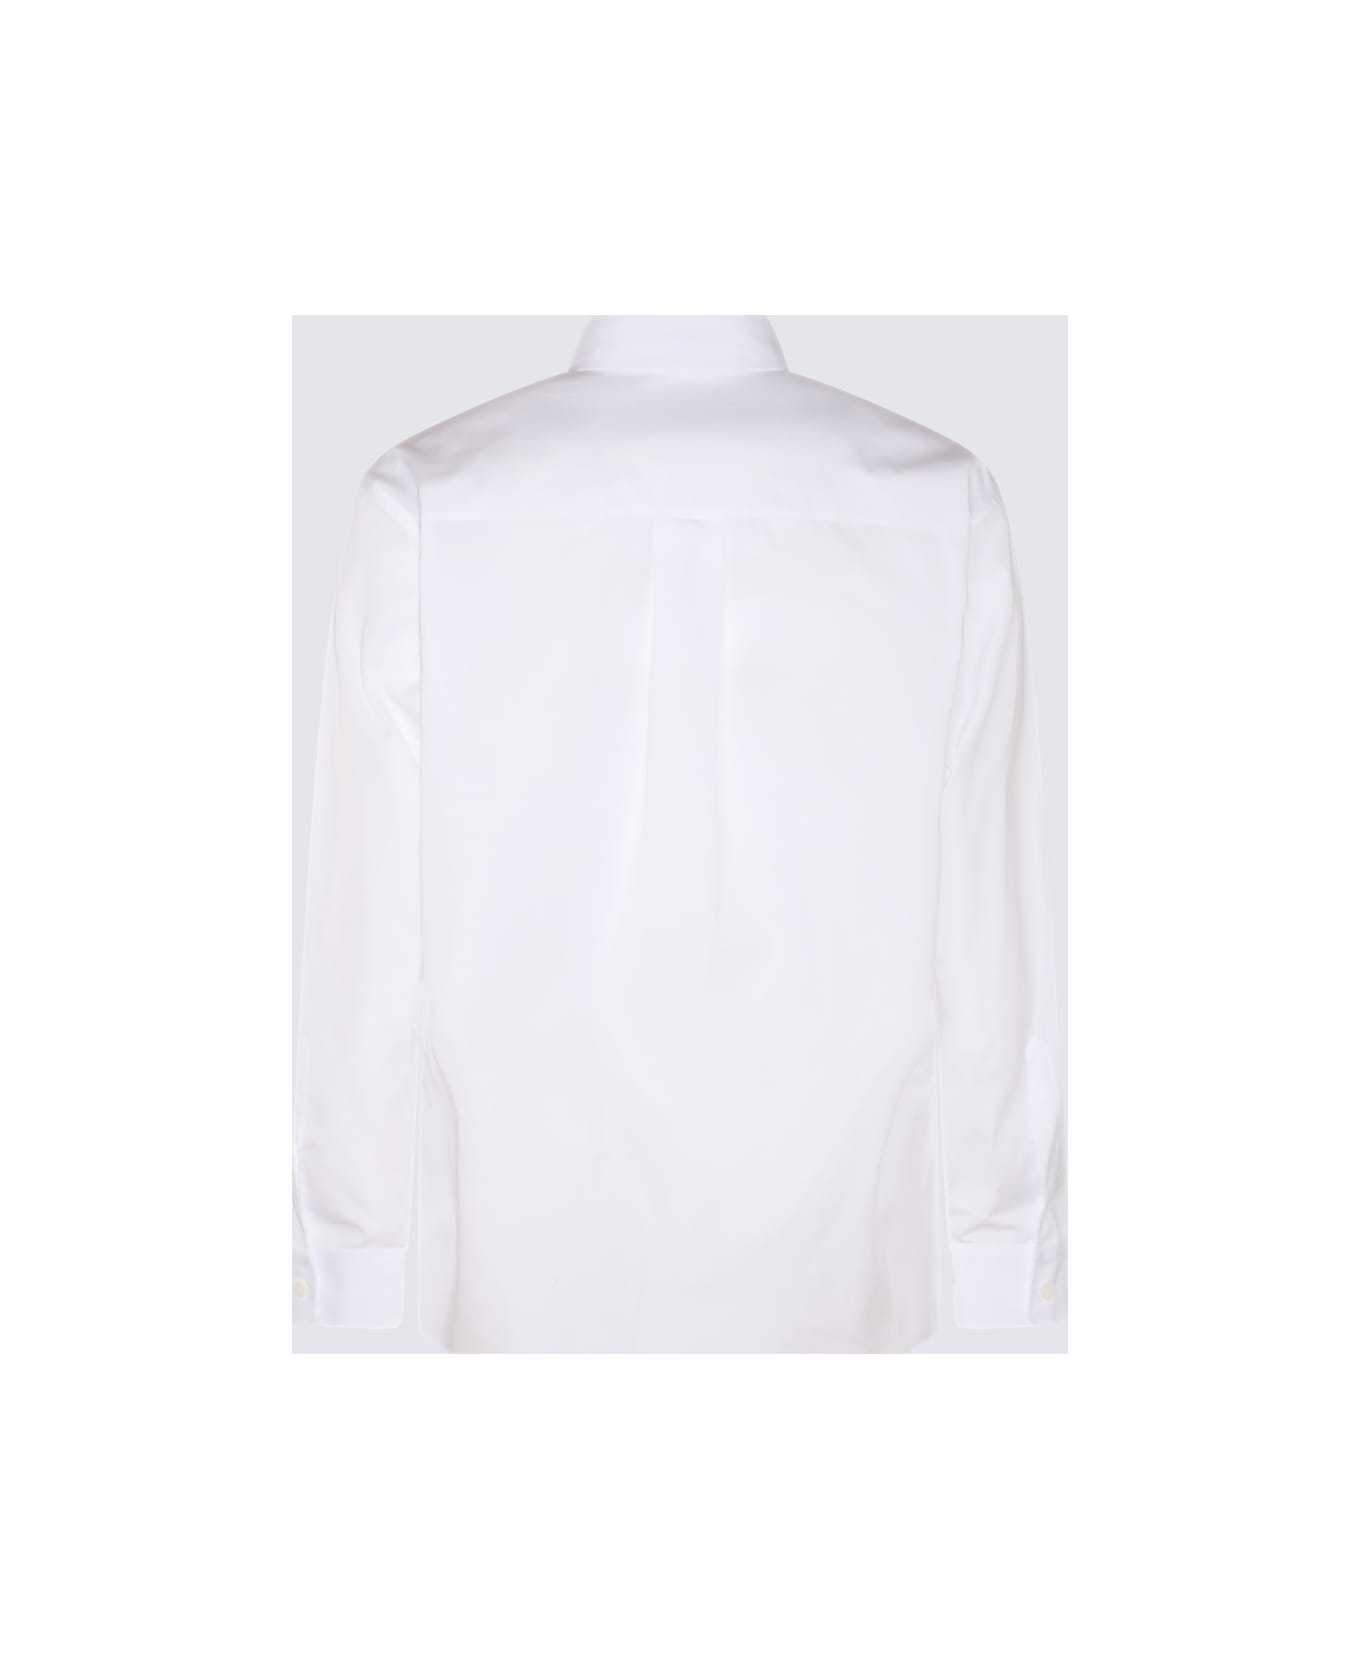 Dsquared2 White And Black Cotton Shirt - White シャツ